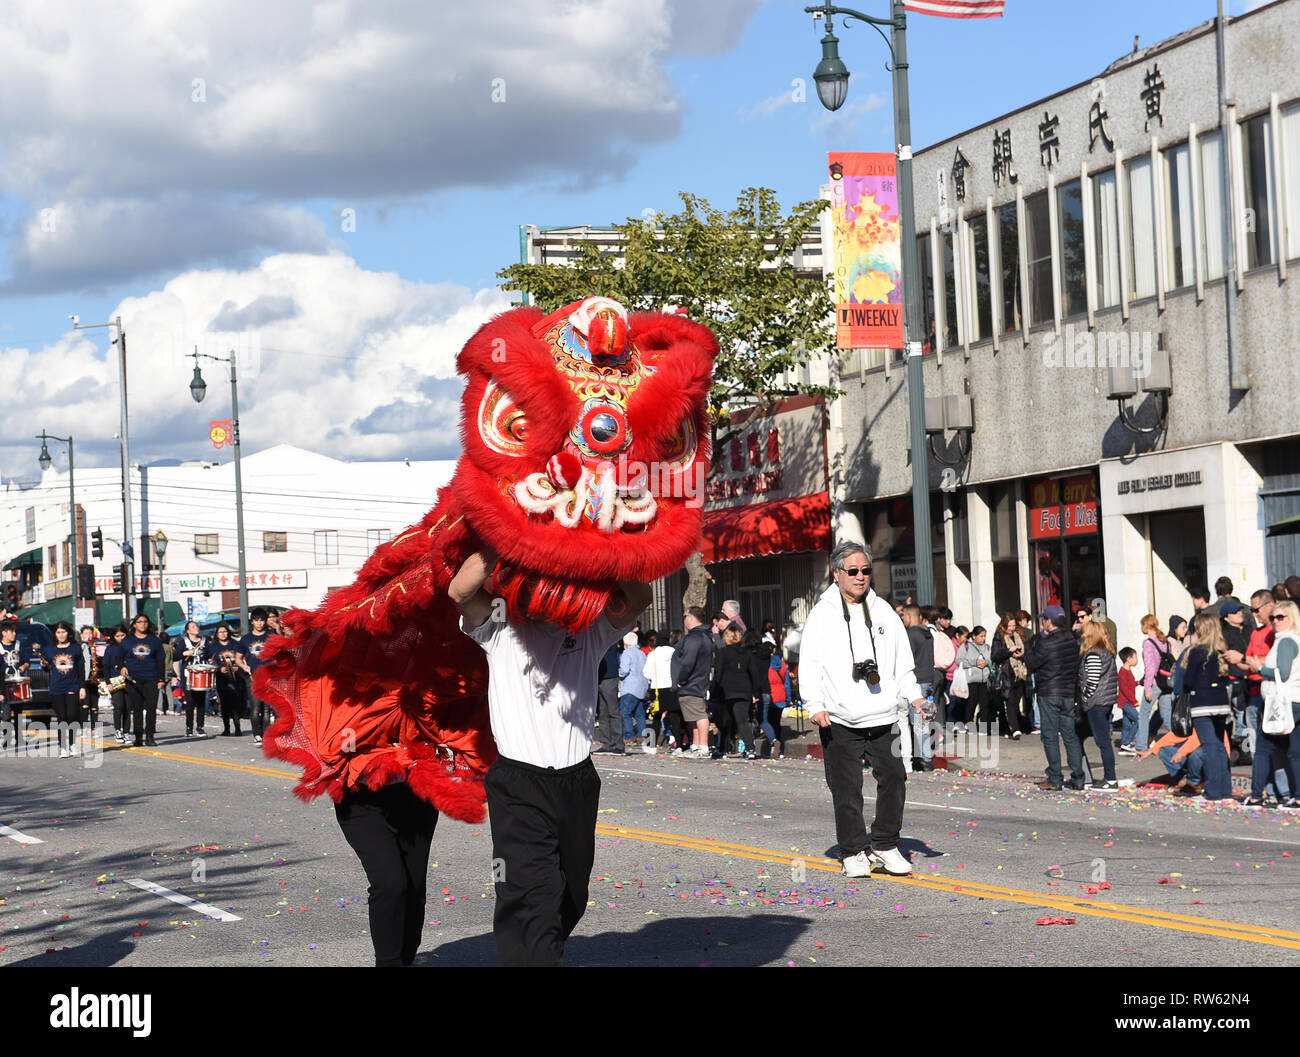 LOS ANGELES - 9 febbraio 2019: draghi cinesi, il simbolo di Chi (l'energia) e buona fortuna al Golden Dragon Parade, per celebrare il capodanno cinese Foto Stock